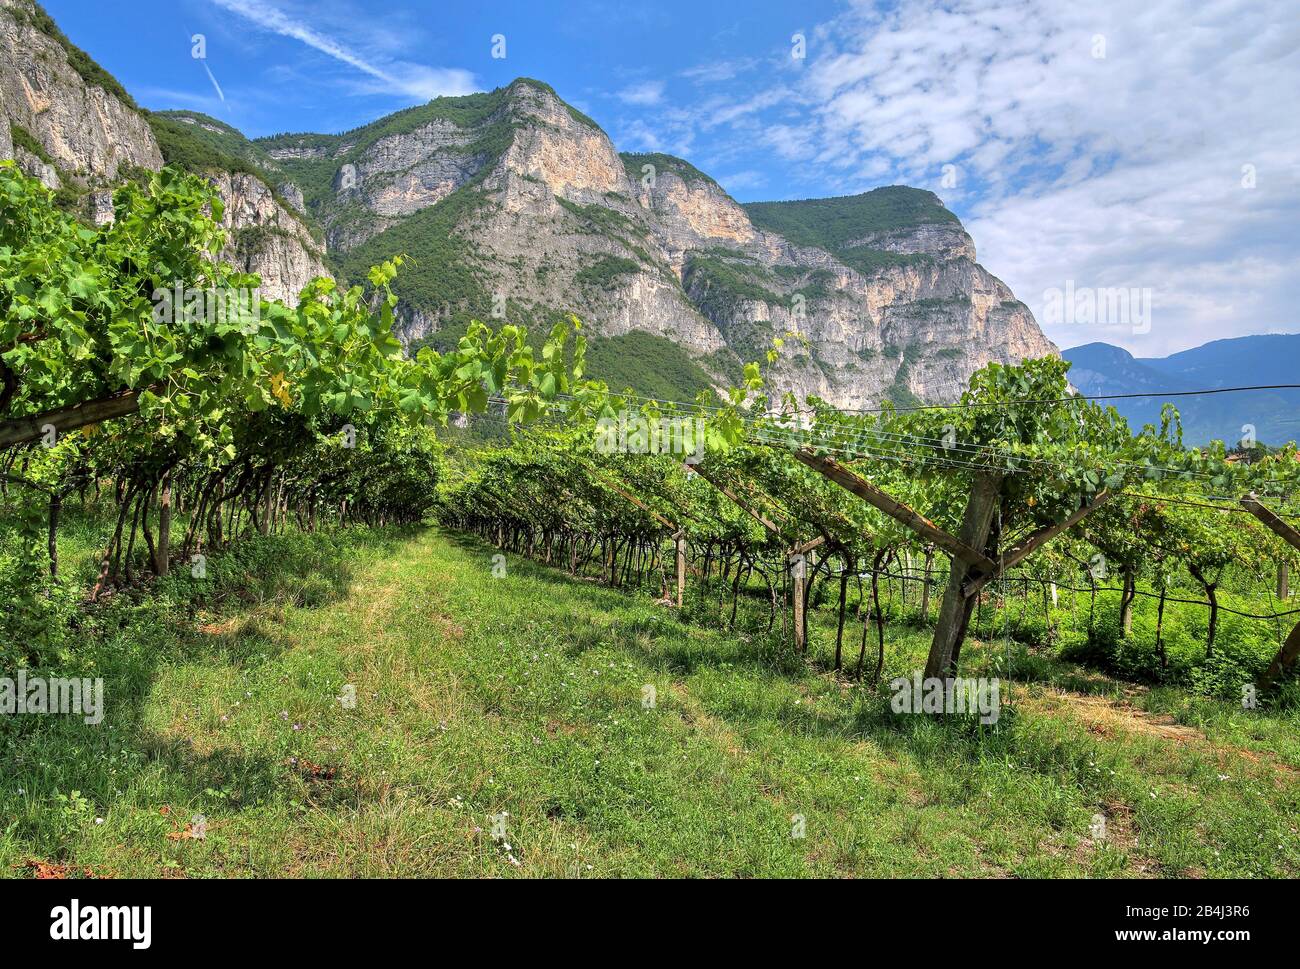 Viñedos bajo acantilados escarpados en la ruta del vino Trentino en el Valle del Adige cerca de Rovere della Luna, Trentino, Tirol del Sur, Italia Foto de stock